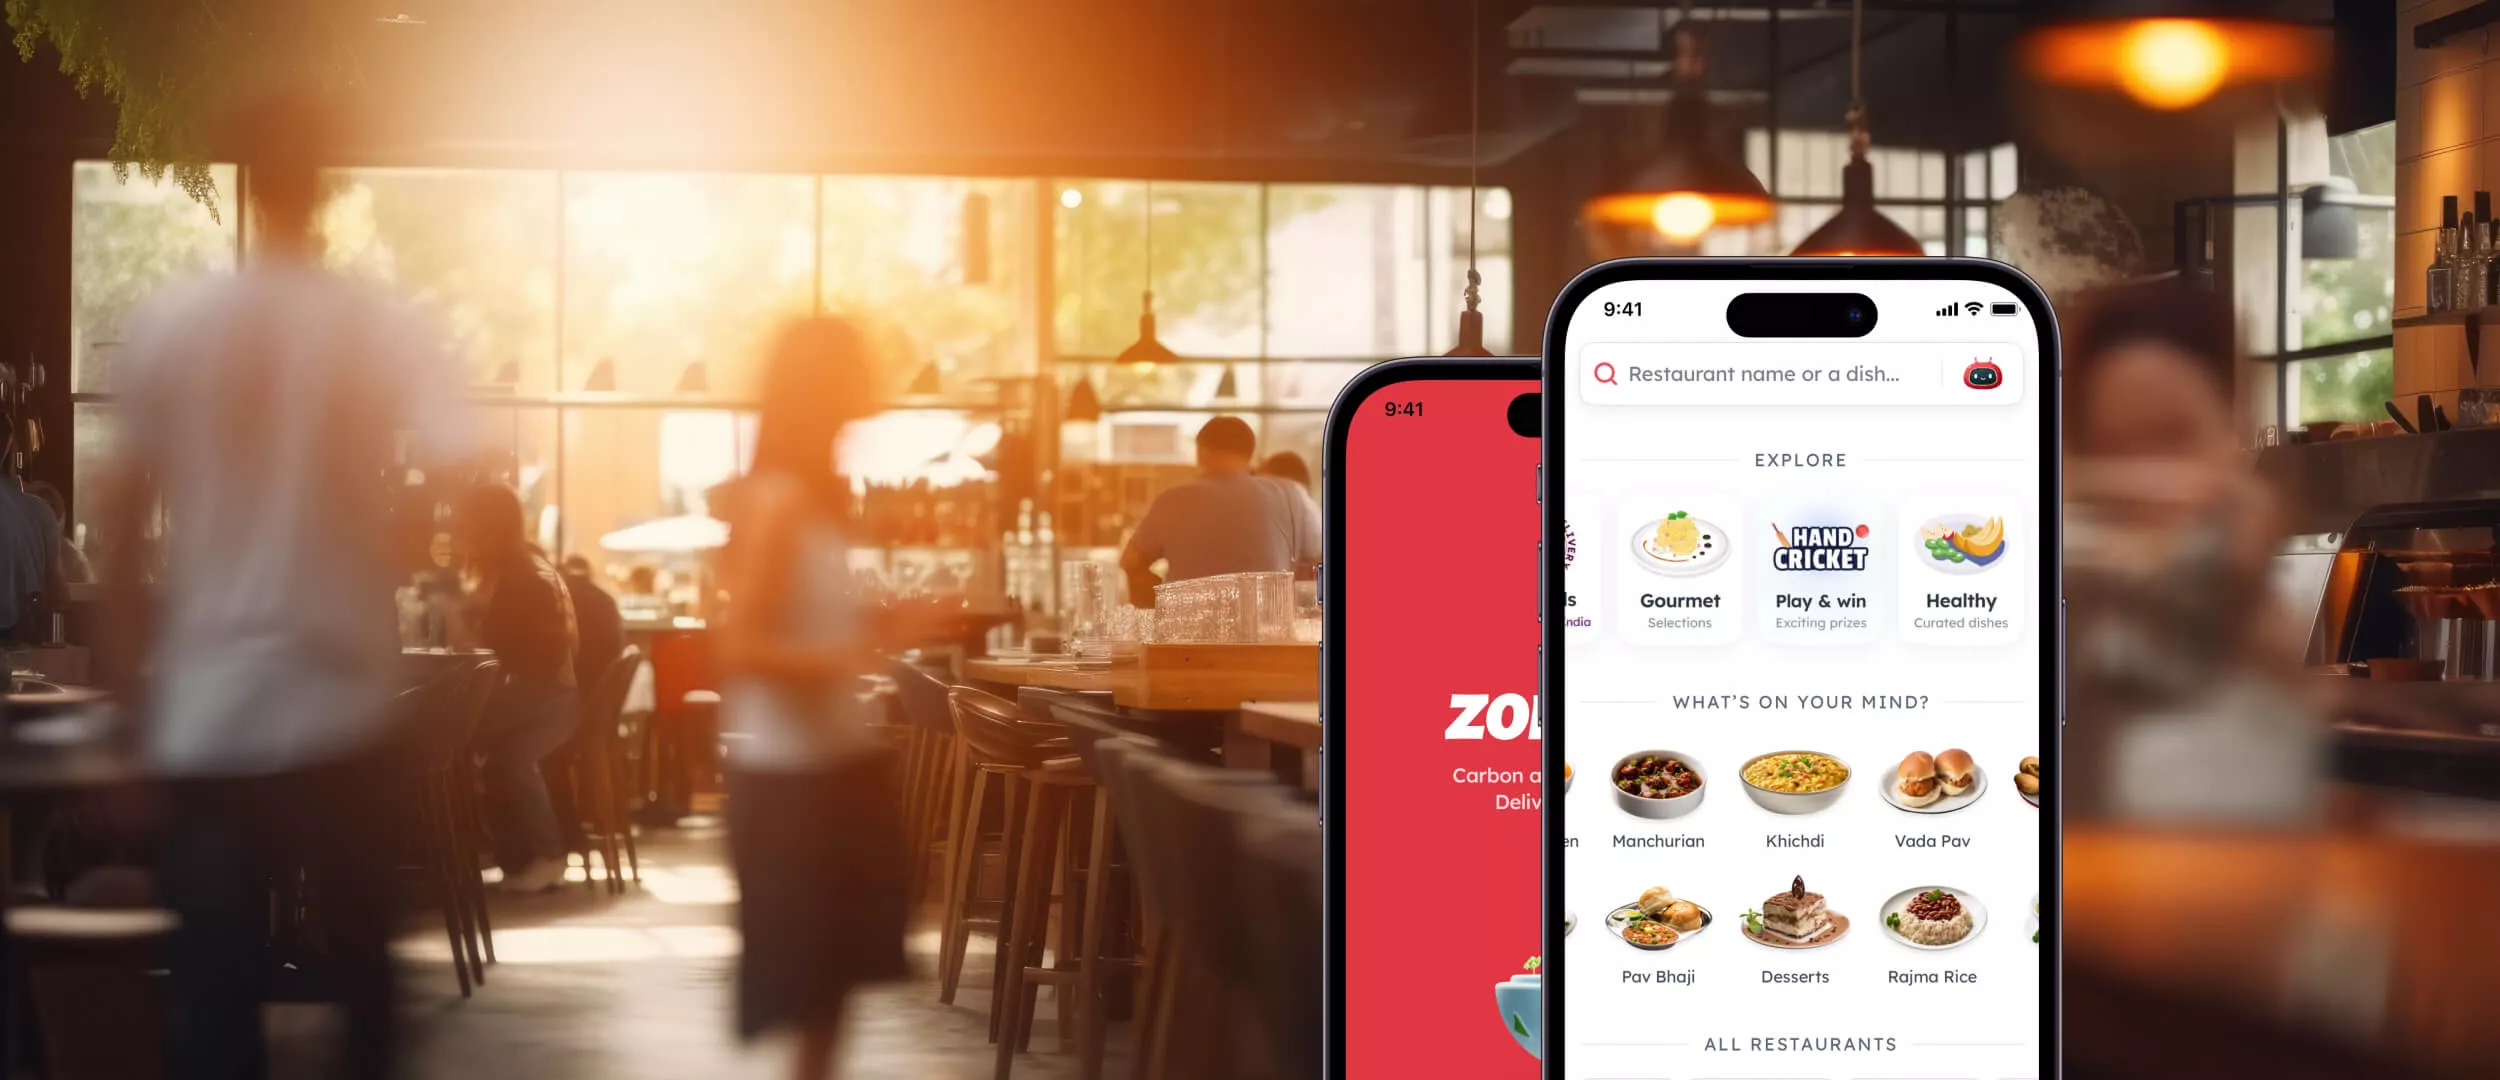 Как создать приложение для поиска ресторанов вроде Zomato или Yelp